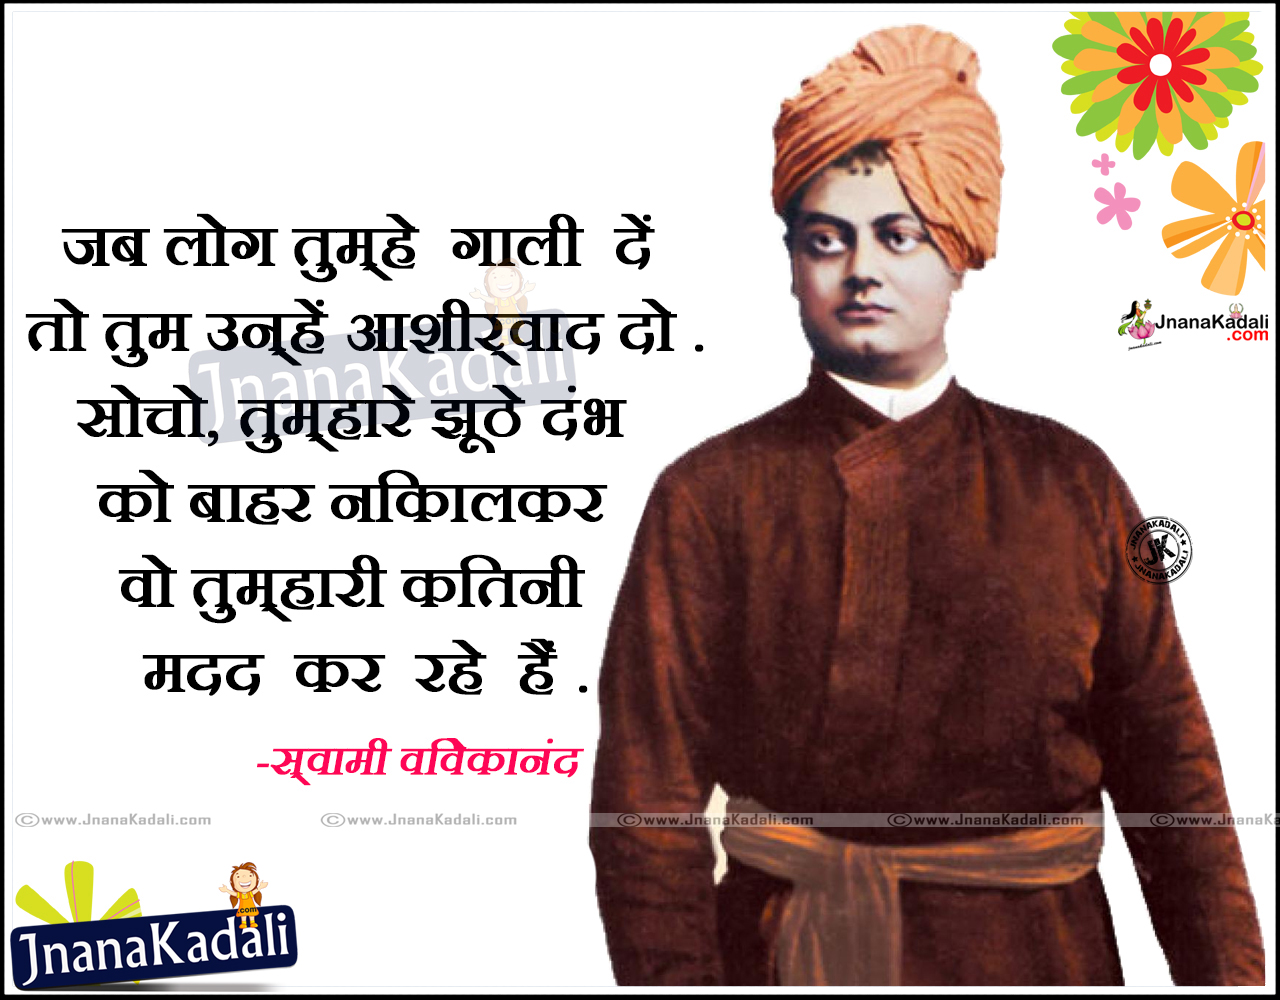 Swami Vivekananda Motivational Quotes In Hindi And English The Emoji